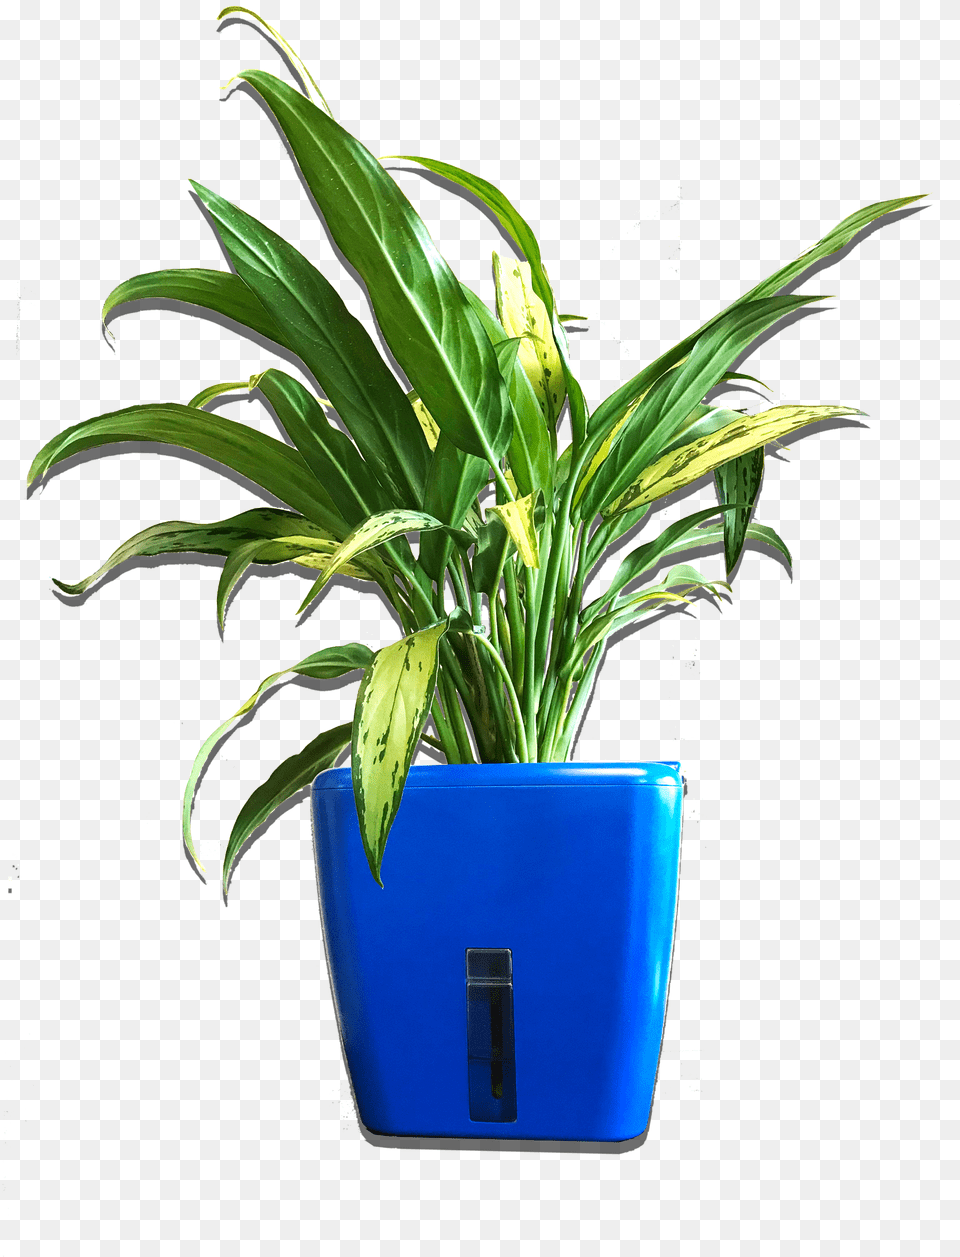 Flowerpot, Plant, Potted Plant, Jar, Planter Png Image